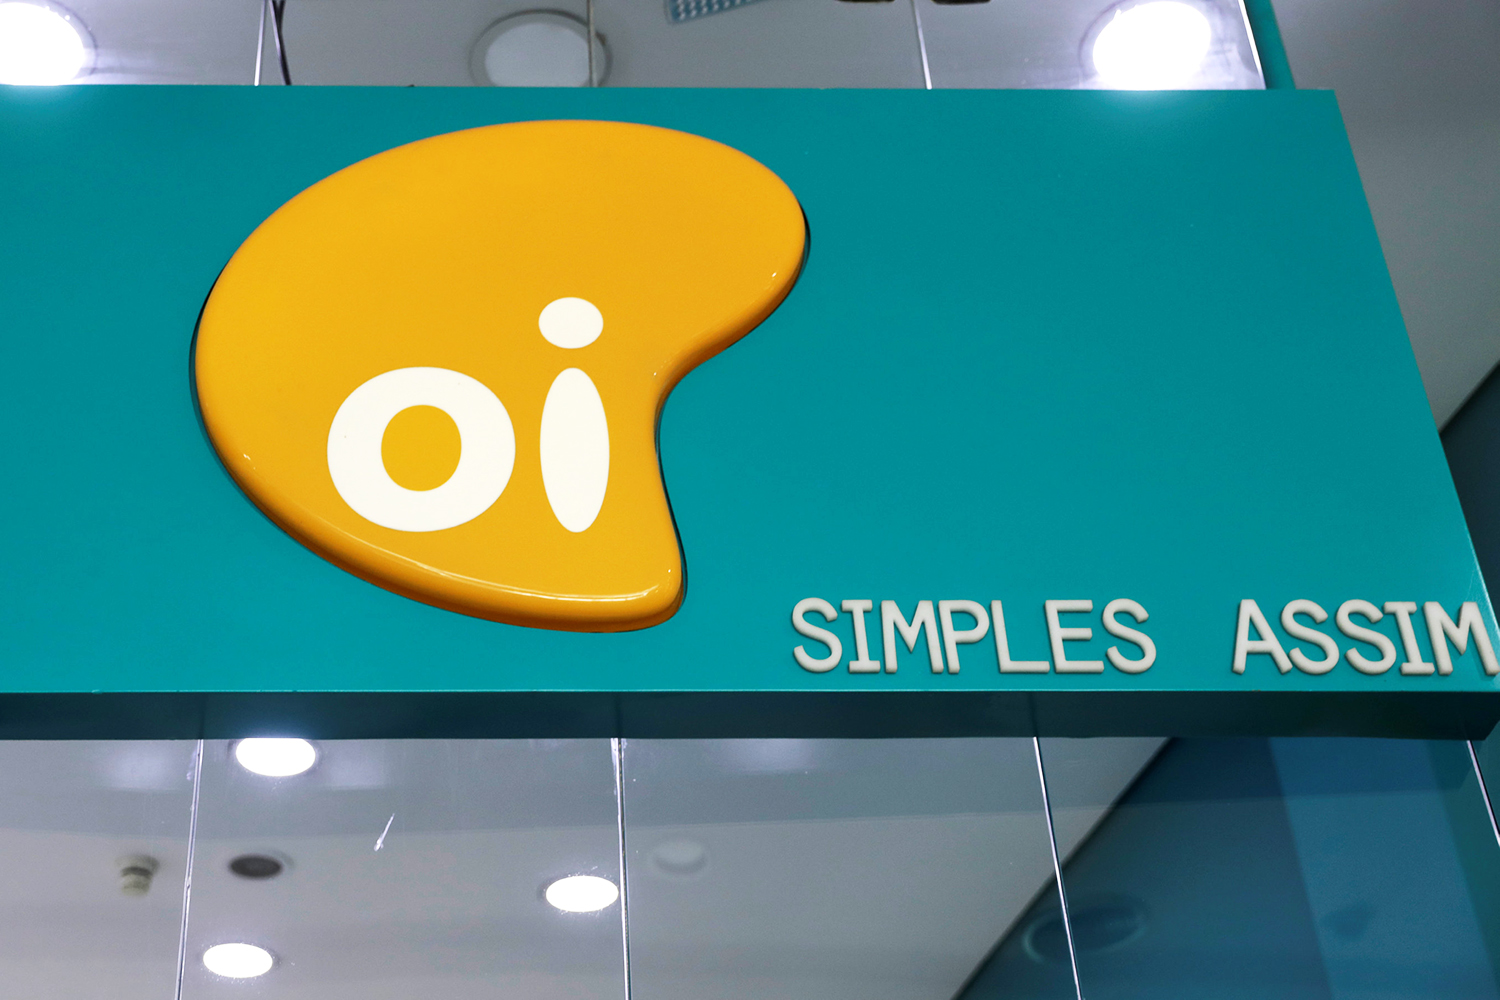 Oi (OIBR3 e OIBR4) faz leilão hoje para vender empresa de fibra óptica em R$ 12,9 bilhões